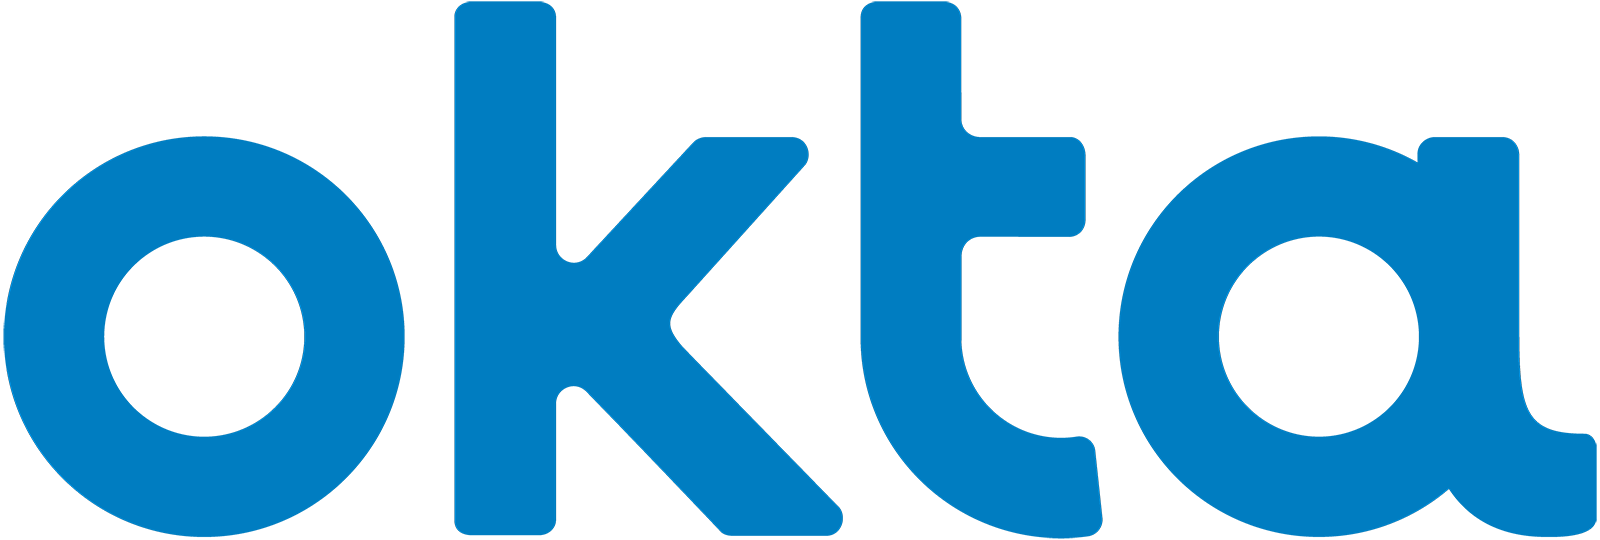 okta-logo-bright-blue-medium.png